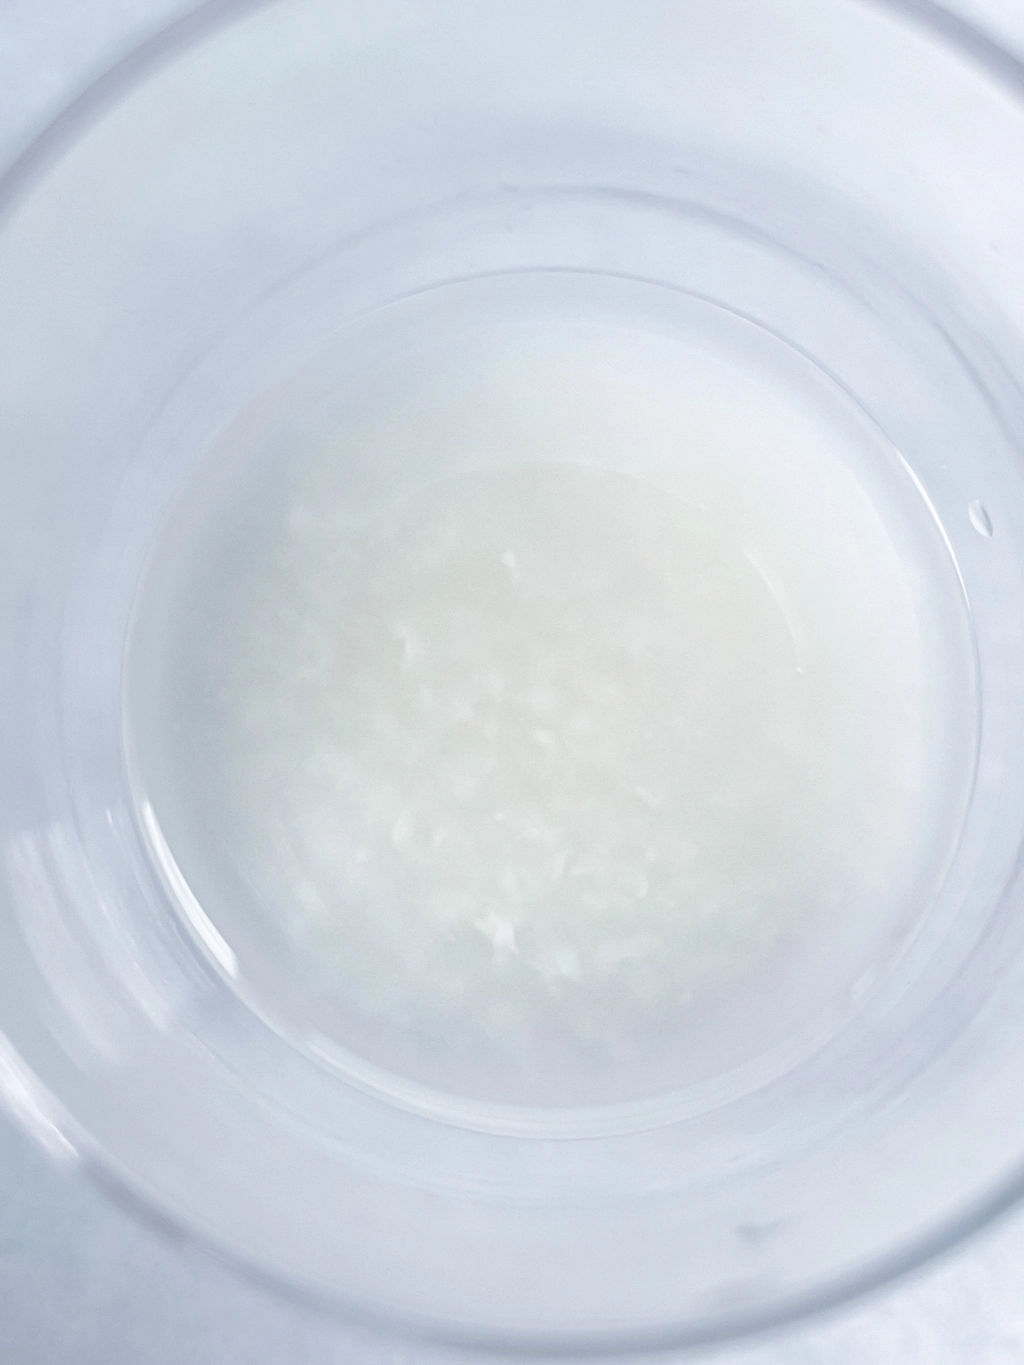 透明なコップの中に入った甘酒をクローズアップで捉えた作品。背景も白いので輪郭が分かりづらく、境界が溶けているようにも見える。